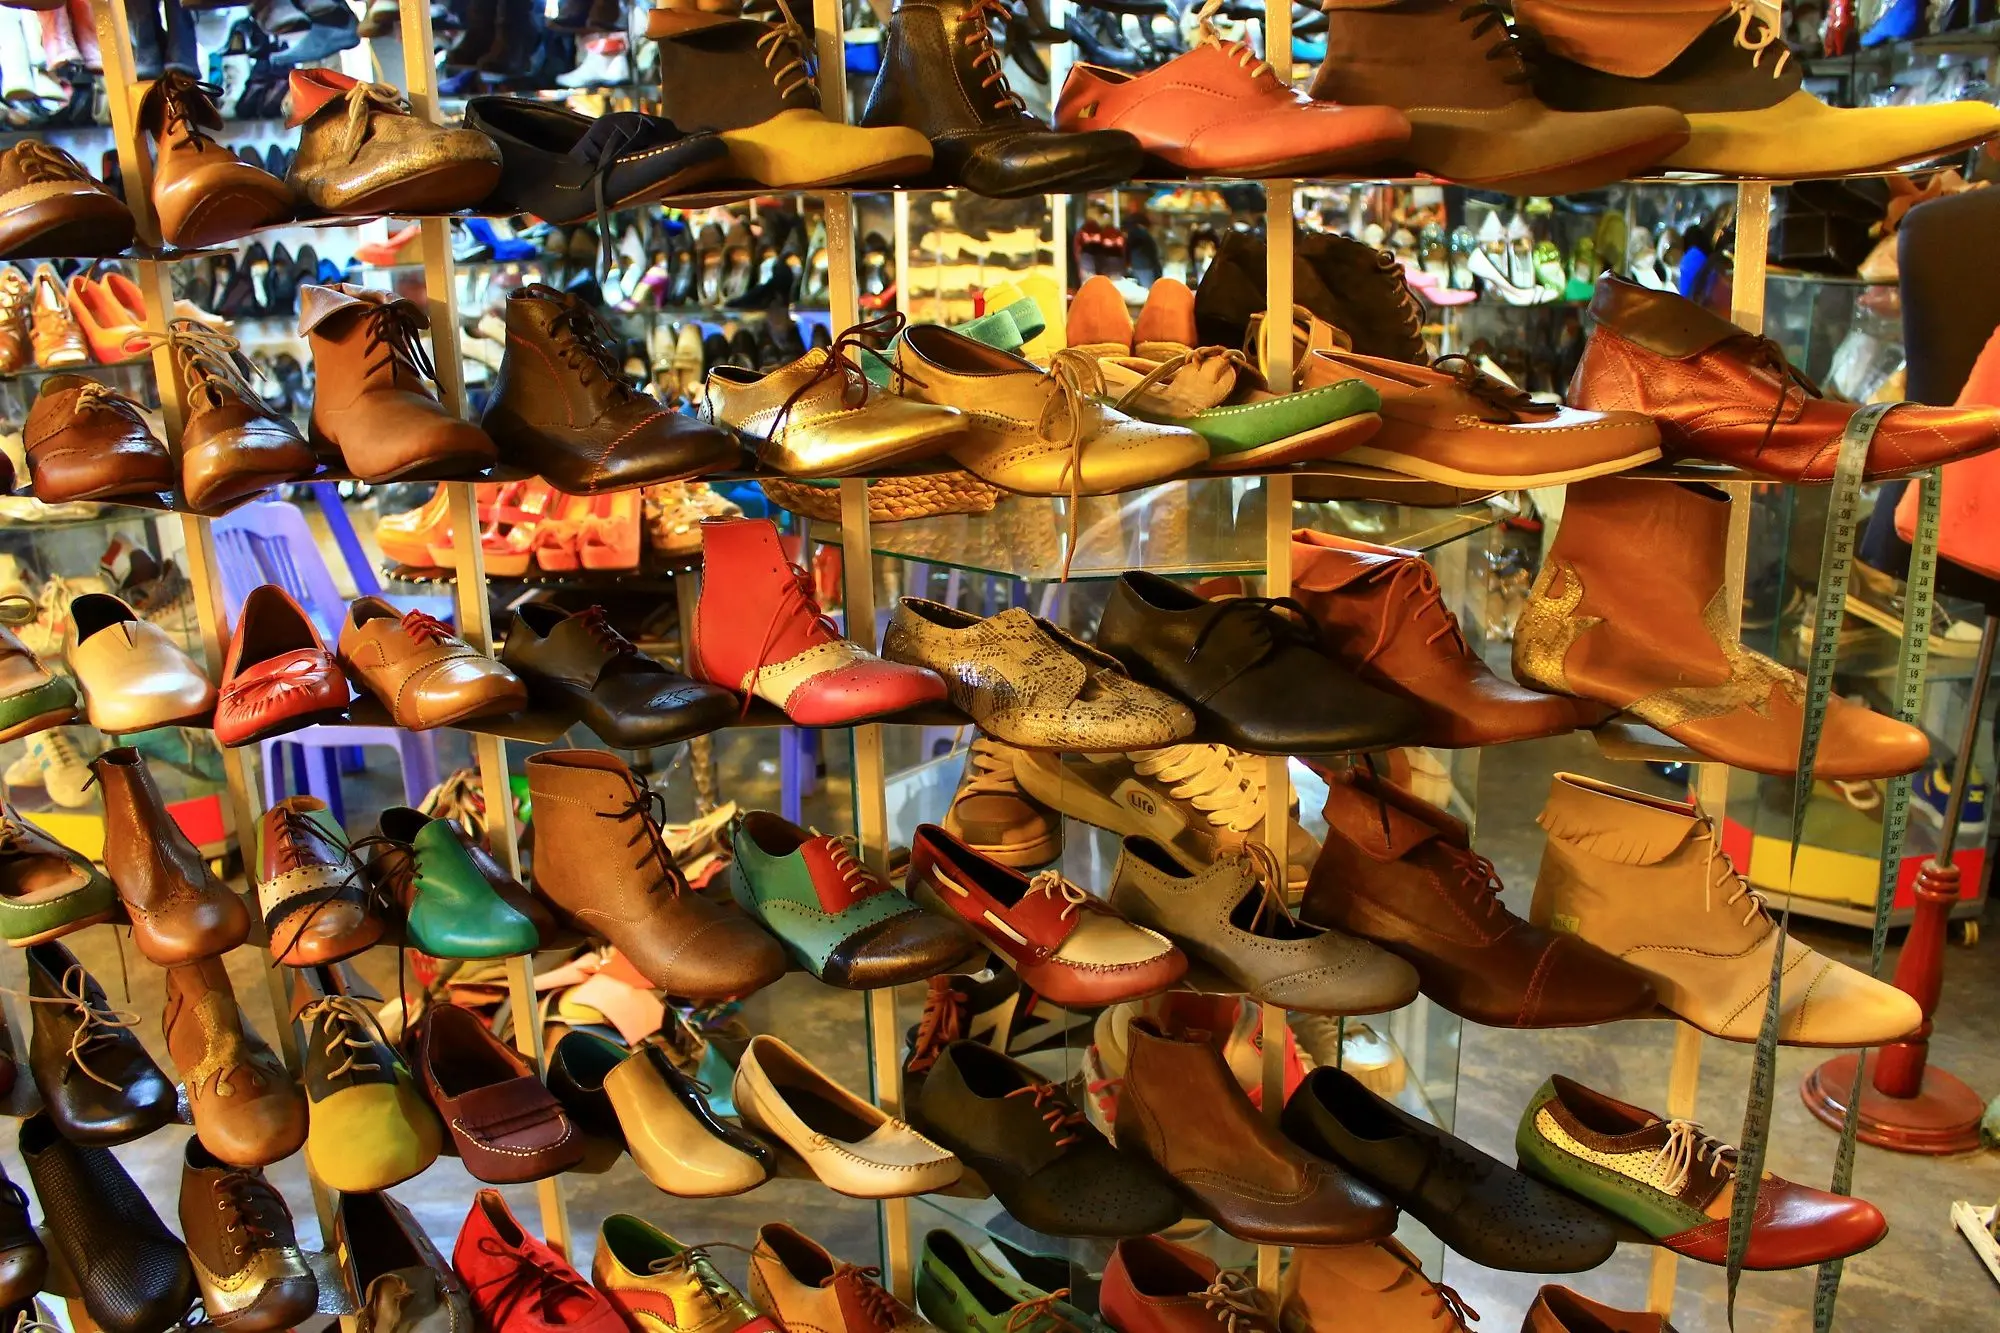 قیمت کفش و کتانی میلیونی شد/ کاهش قدرت خرید مردم برای خرید کفش